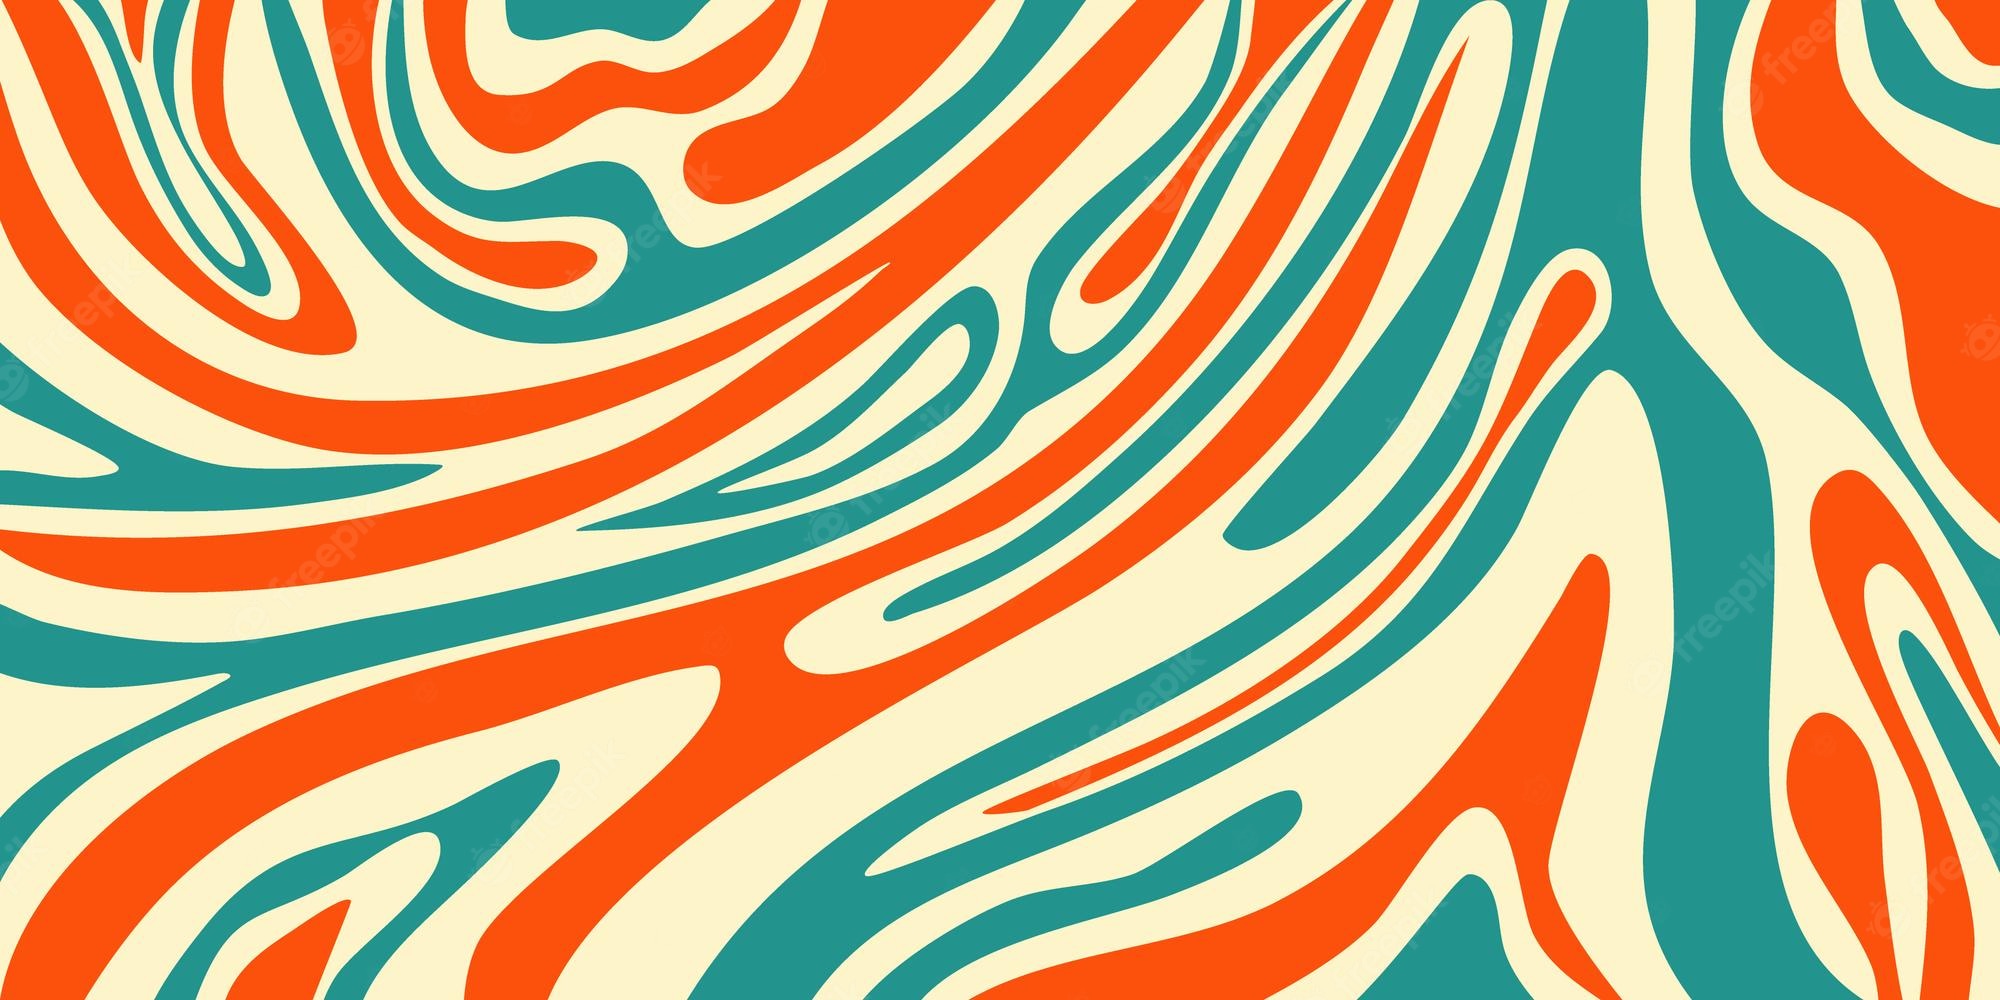 Swirl Aesthetic Wallpapers